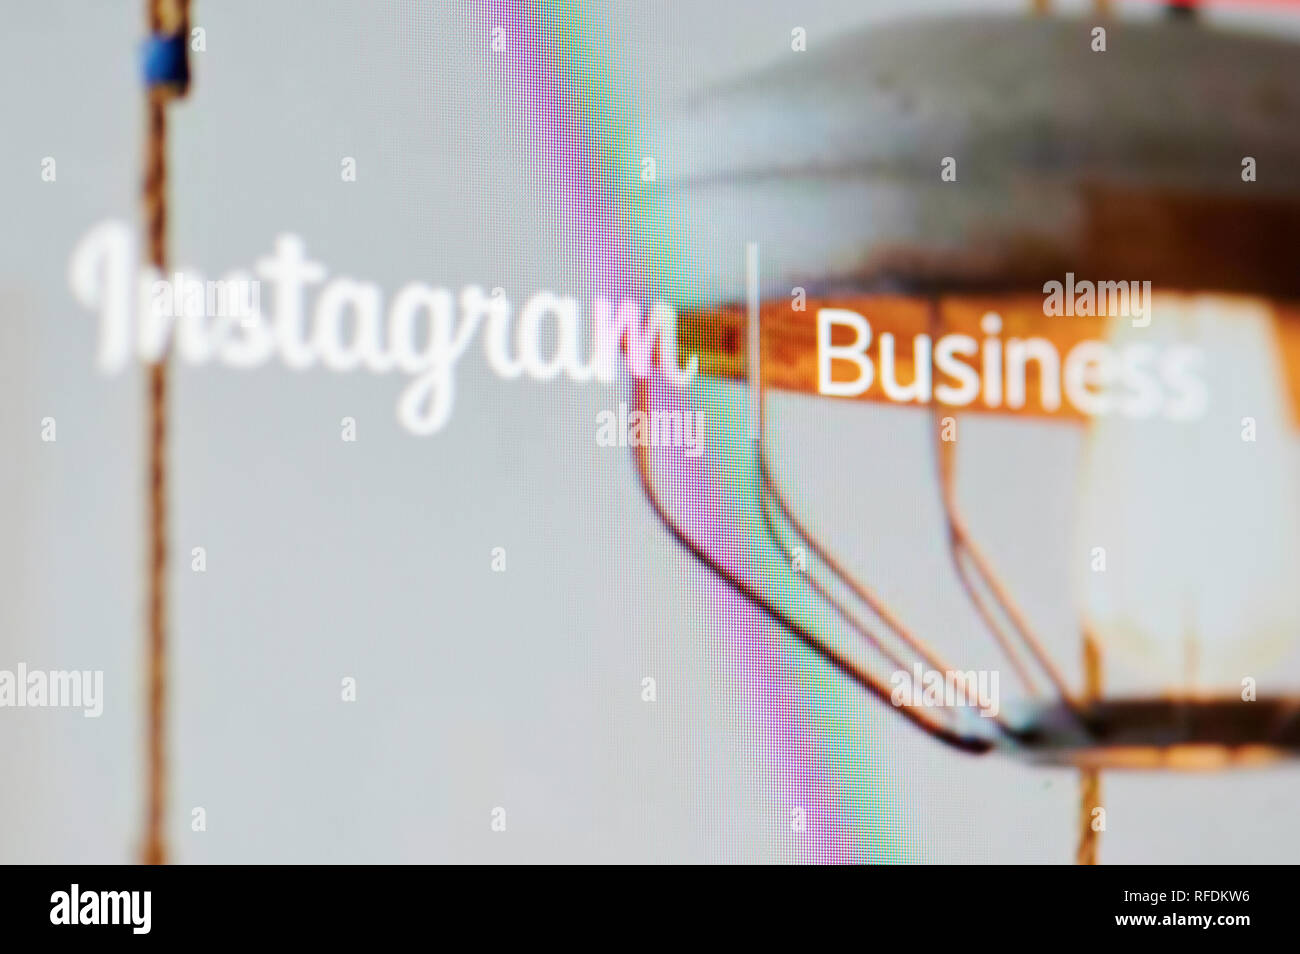 New York, USA - 24 janvier, 2019 Instagram : logo d'entreprise menu sur écran de l'appareil pixelisées vue en gros plan. Thème d'Instagram Banque D'Images